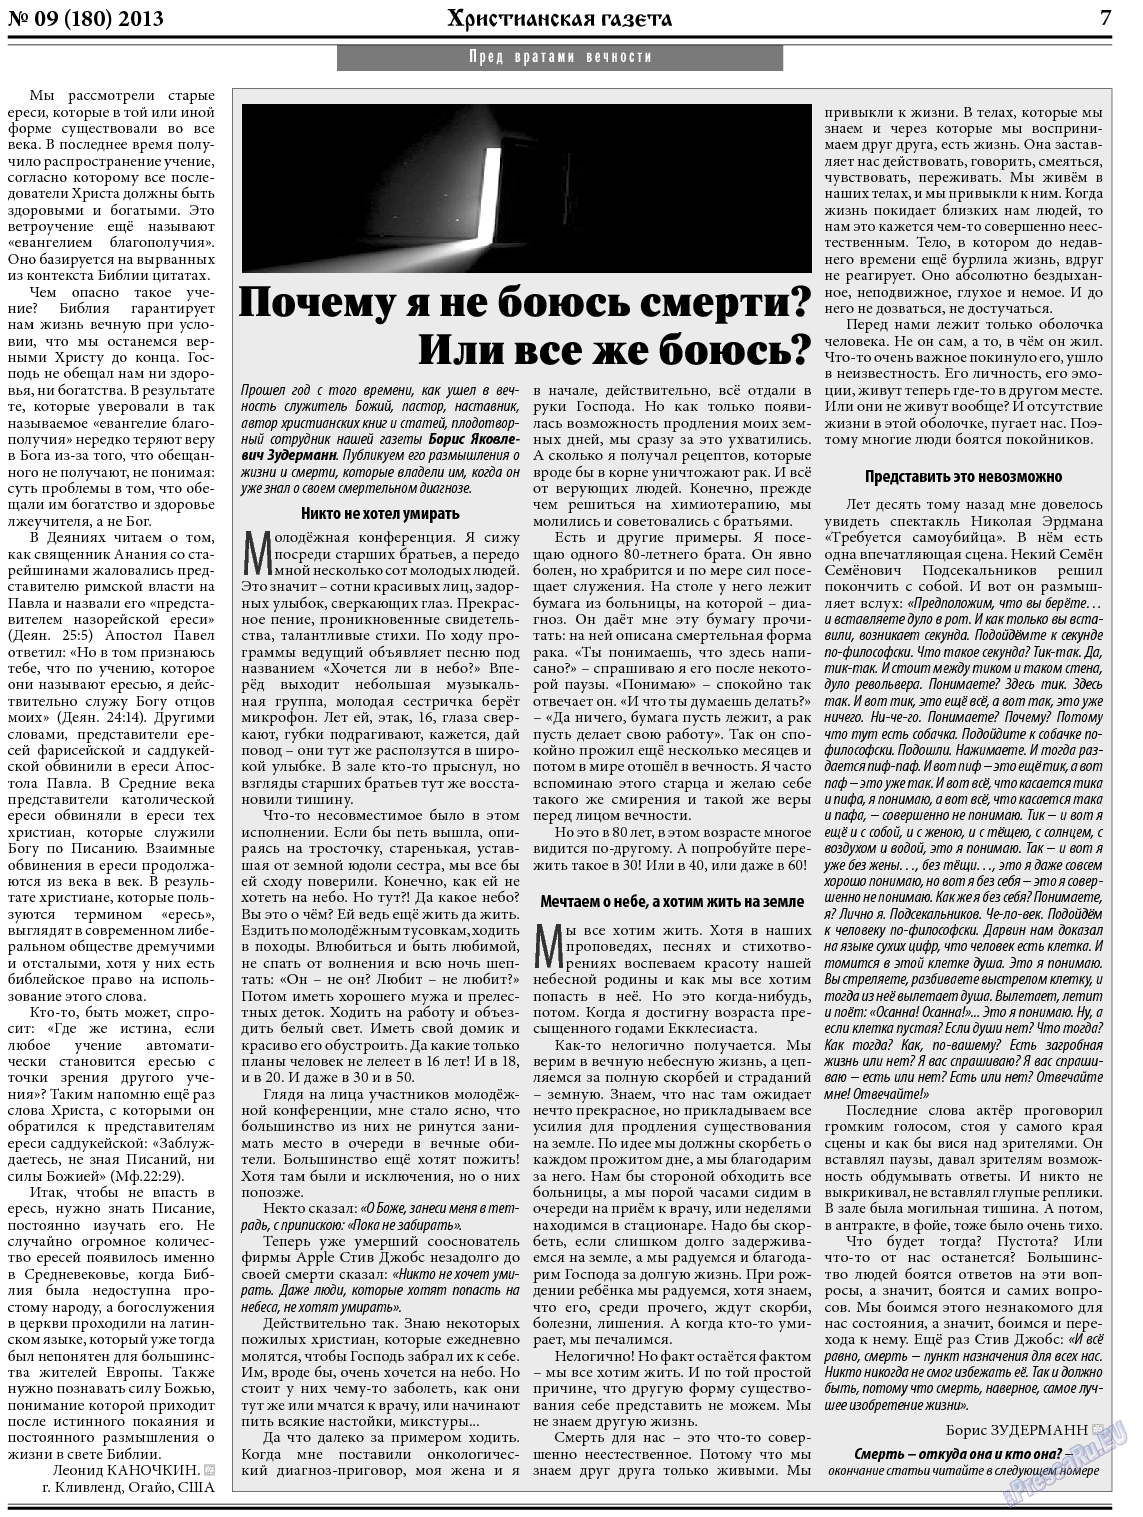 Христианская газета, газета. 2013 №9 стр.7